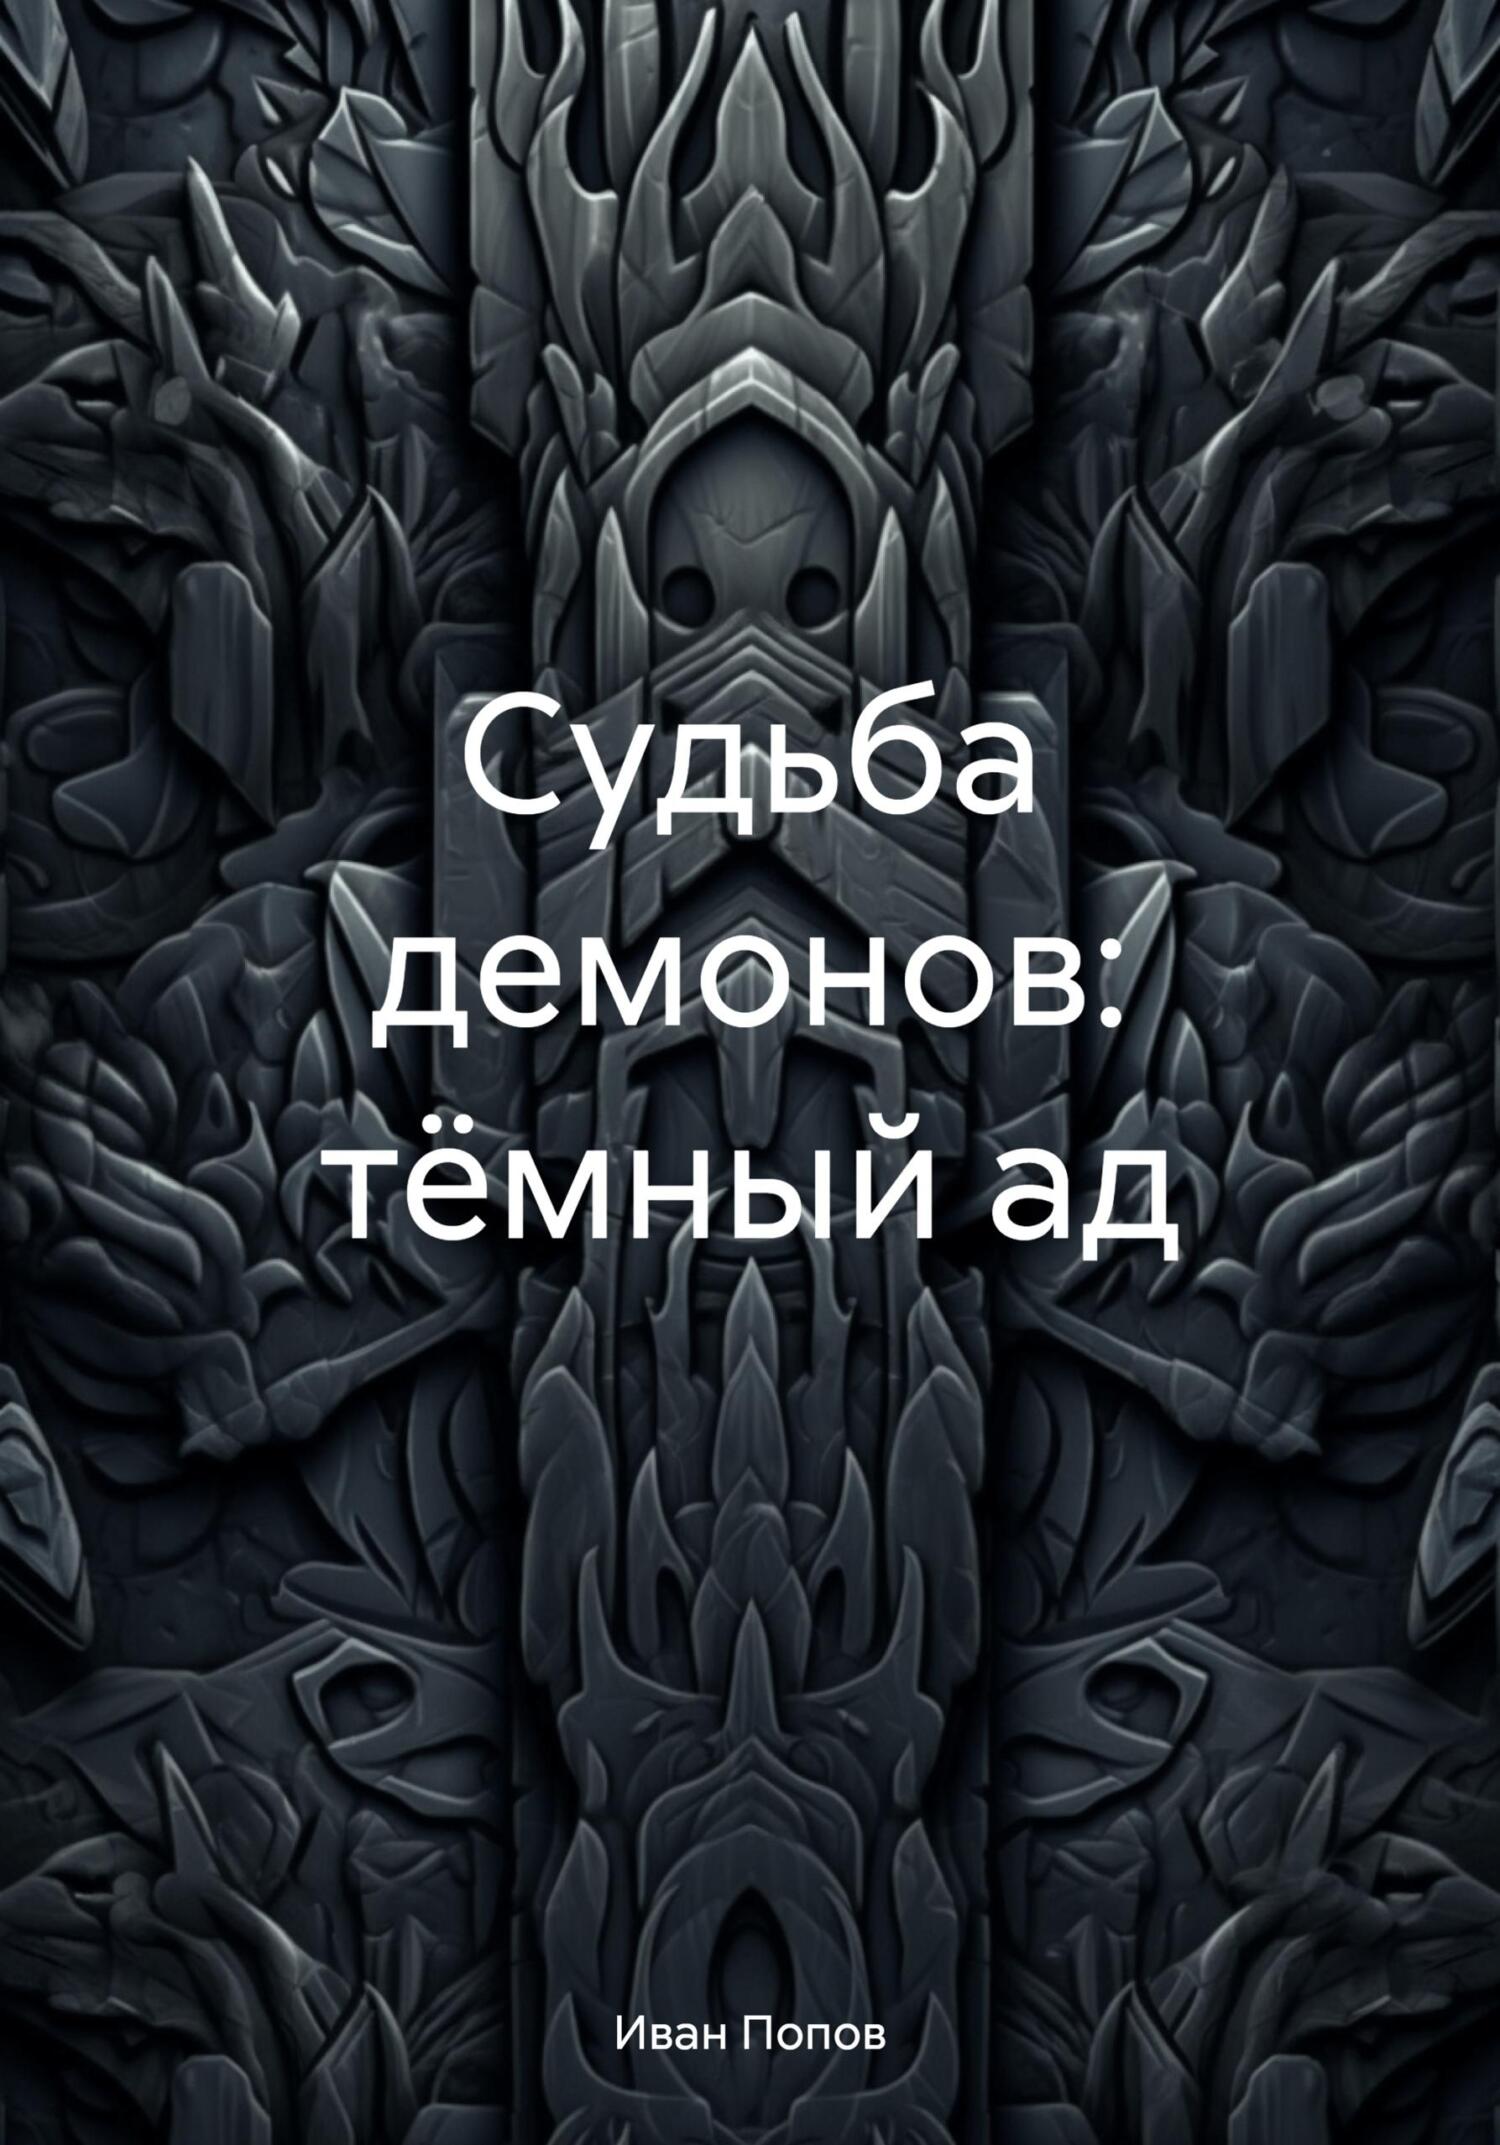 Судьба демонов: тёмный ад - Иван Владимирович Попов